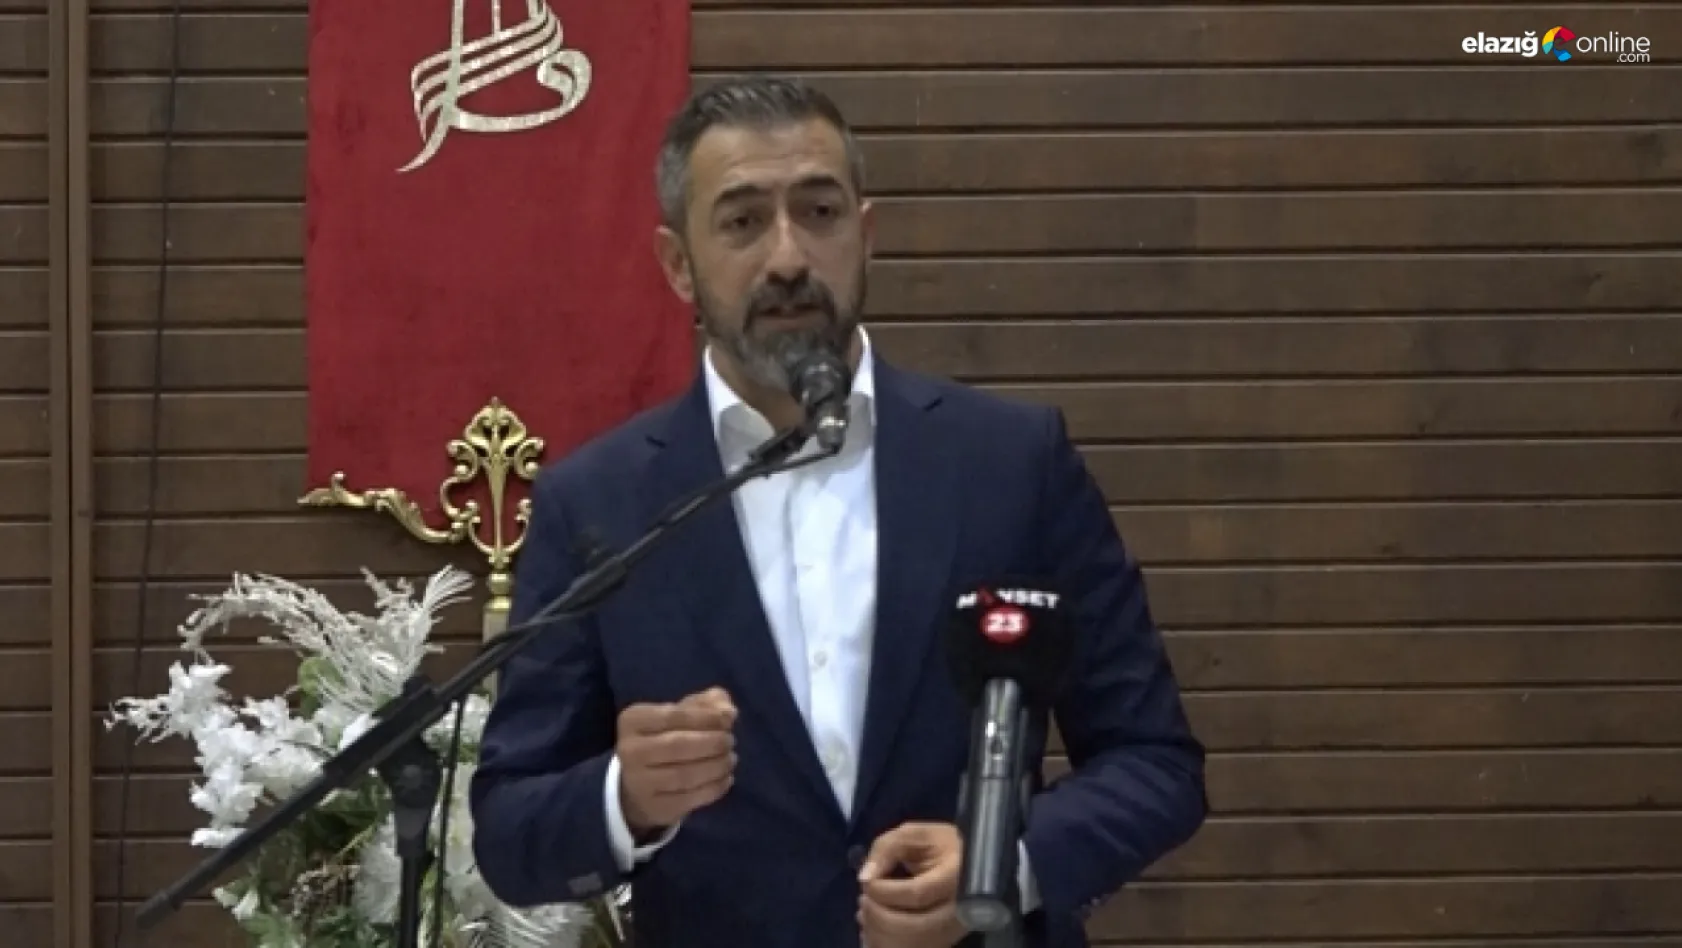 MHP Elazığ İl Başkanı Semih Işıkver: '13 Kasım'dan sonra, görevimi bırakacağım'